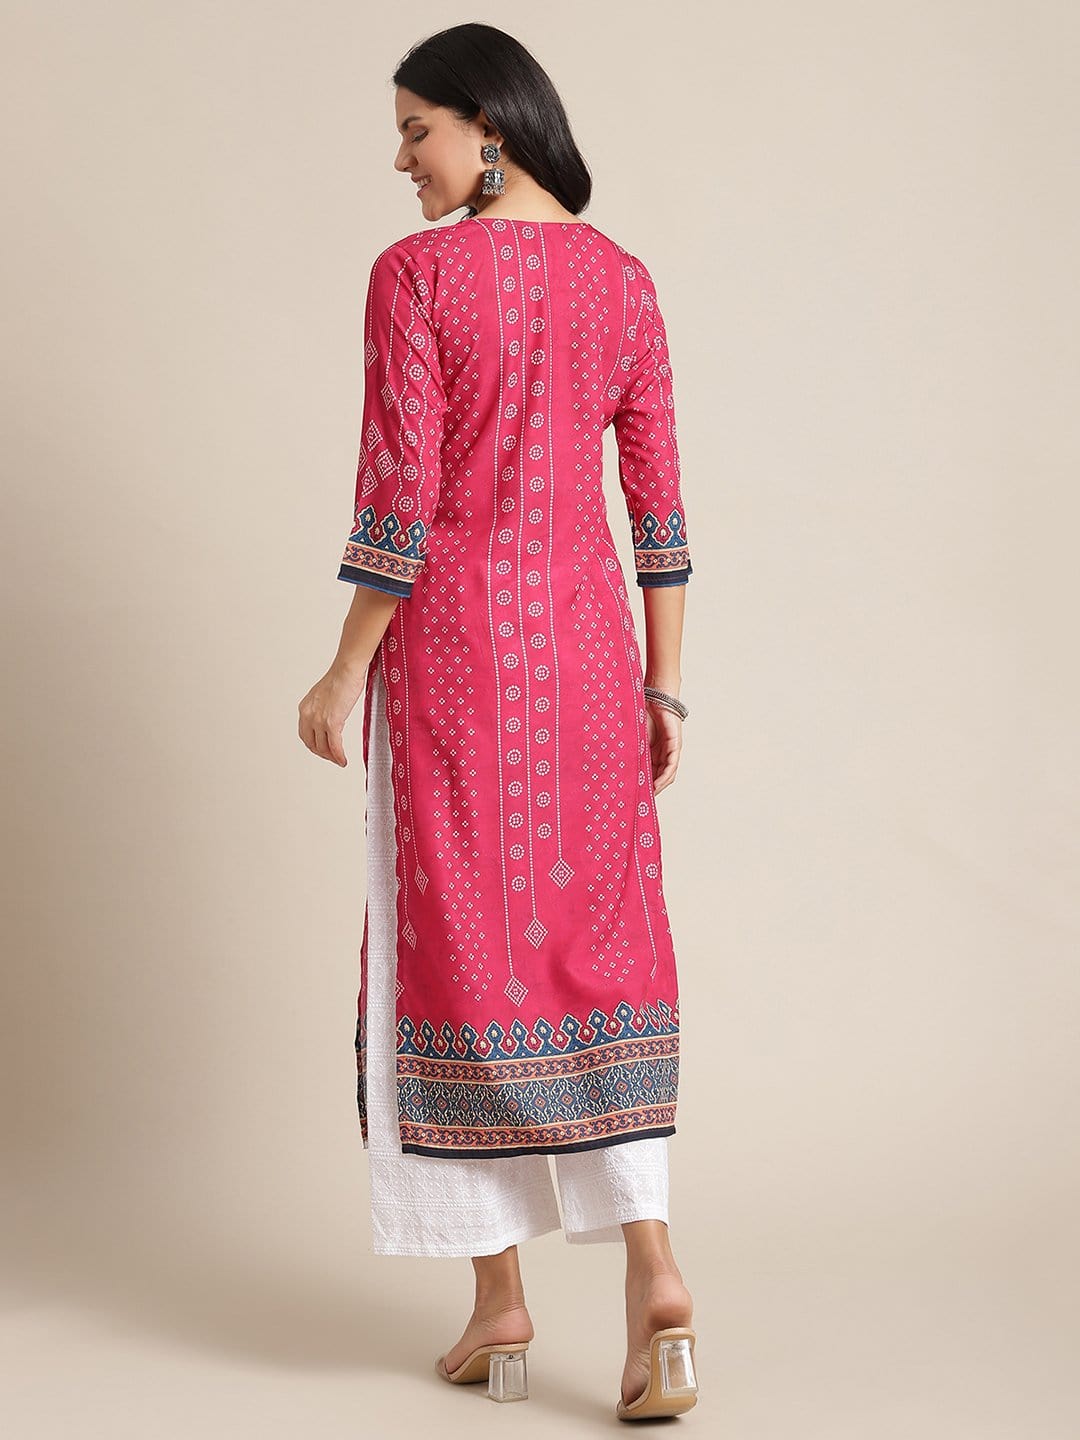 Women's KSUT Pink And Cream Bandhani Printed Straight Kurta With 3/4Th Sleeves - Varanga